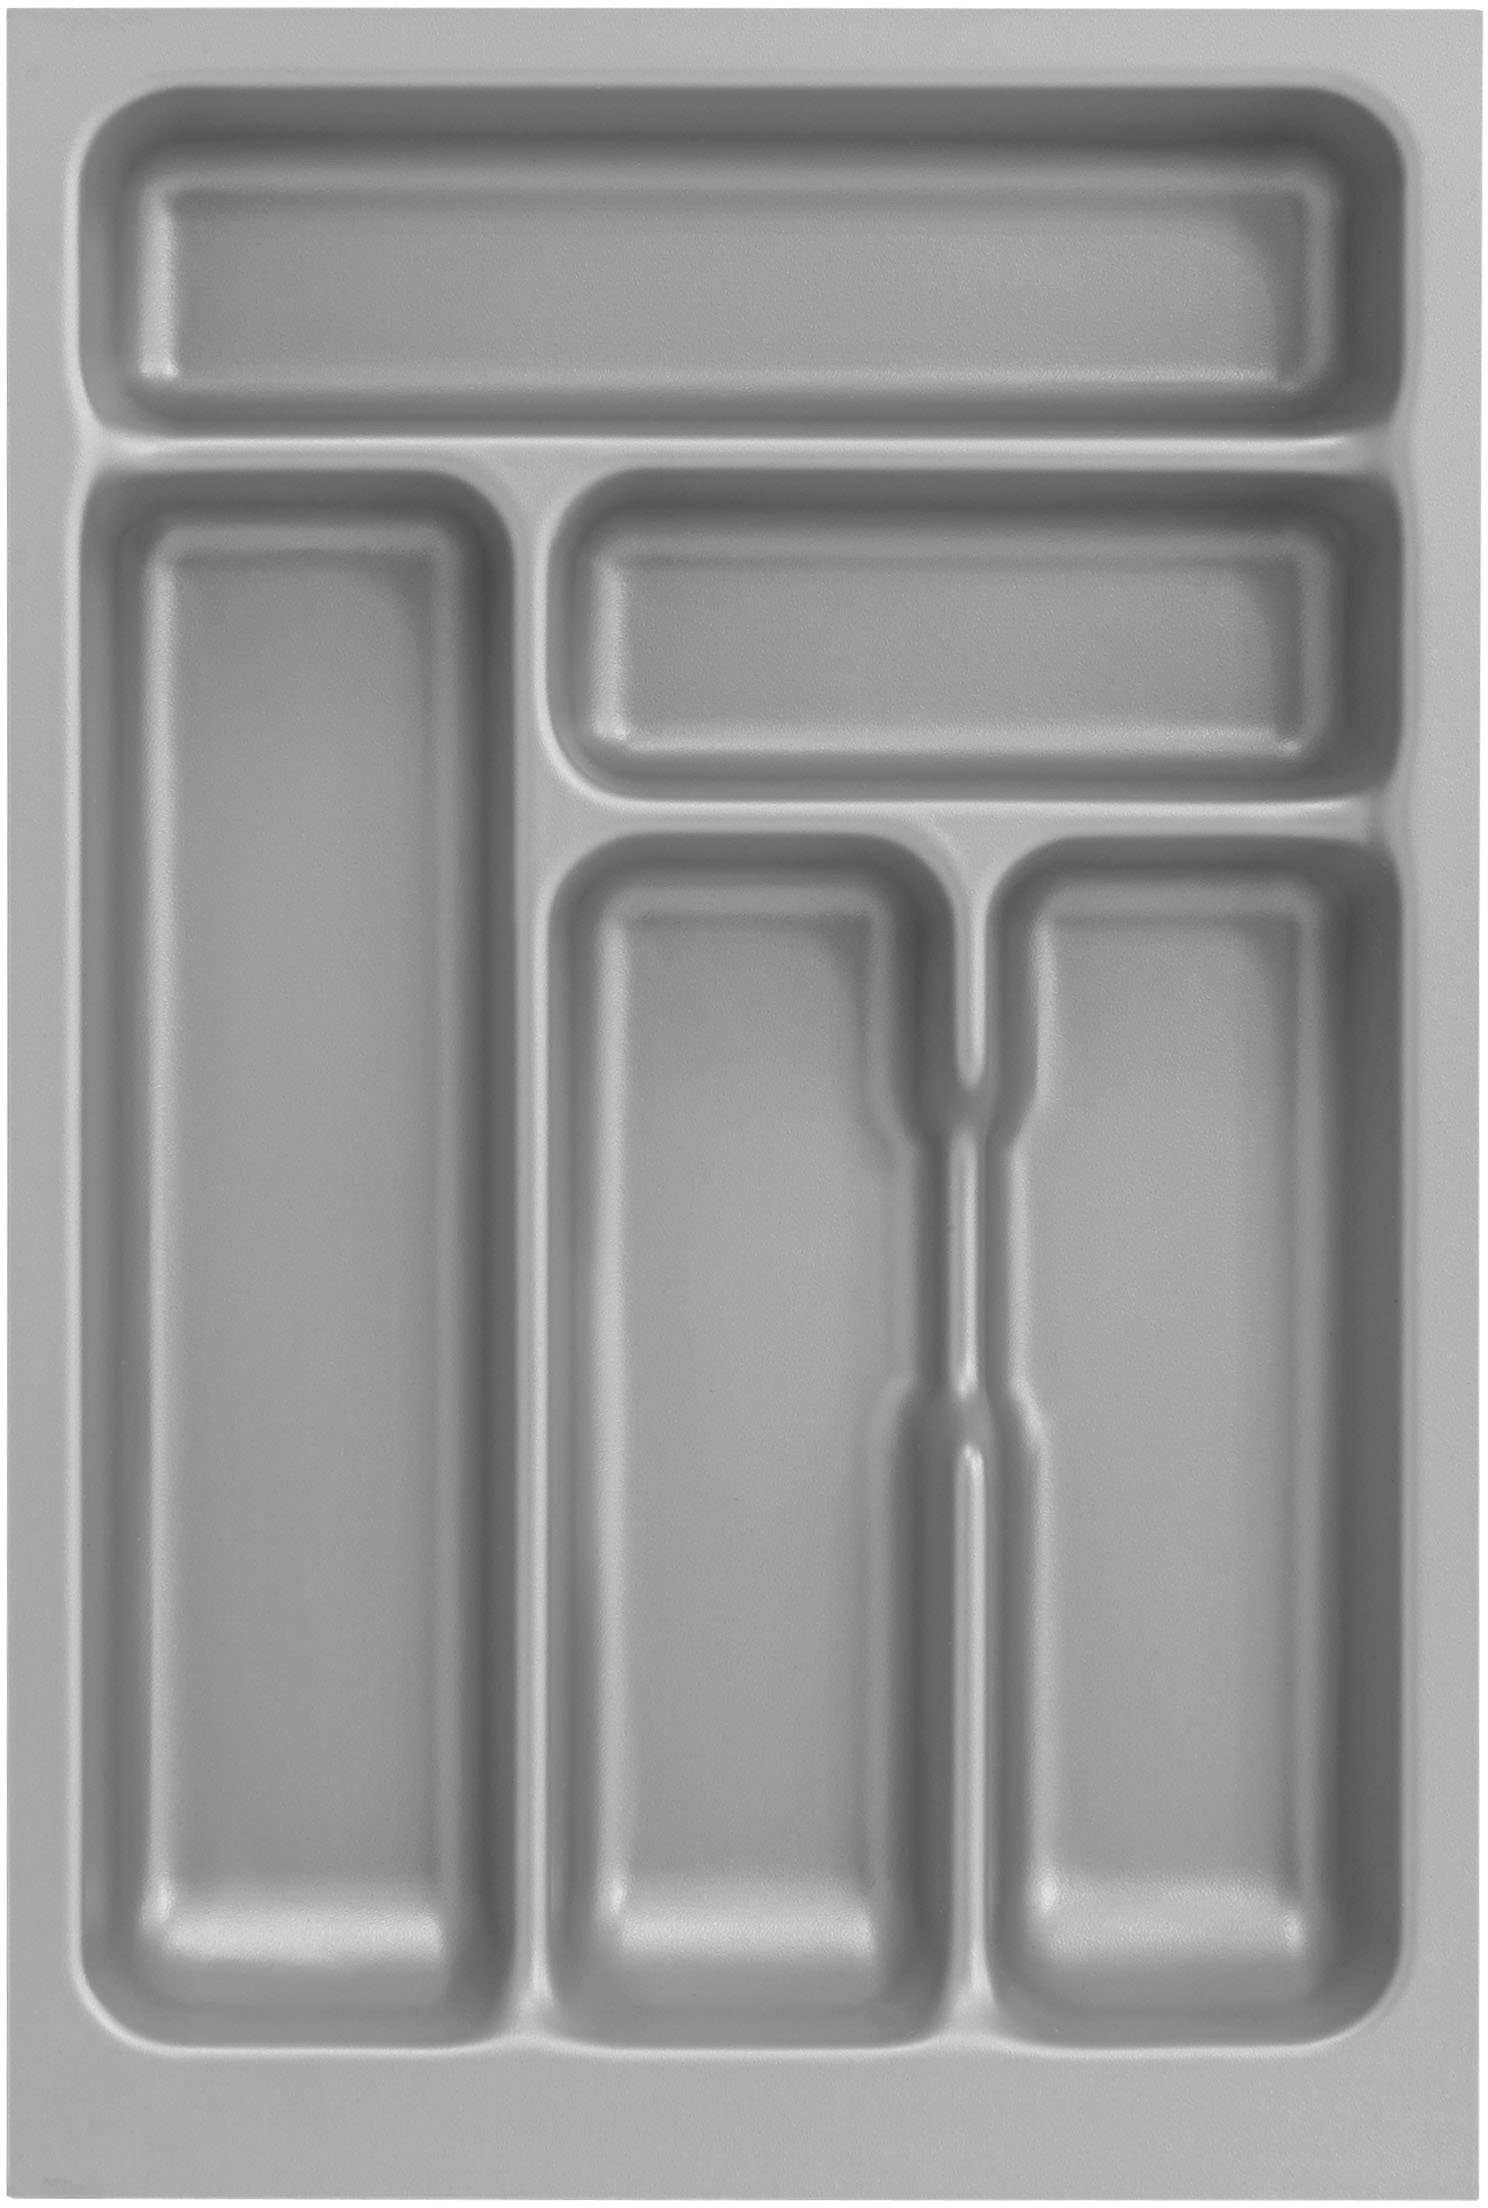 OPTIFIT Küche Safeli, Hanseatic-E-Geräte ohne cm, wahlweise oder weiß Breite weiß/weiß-wildeiche mit | 210